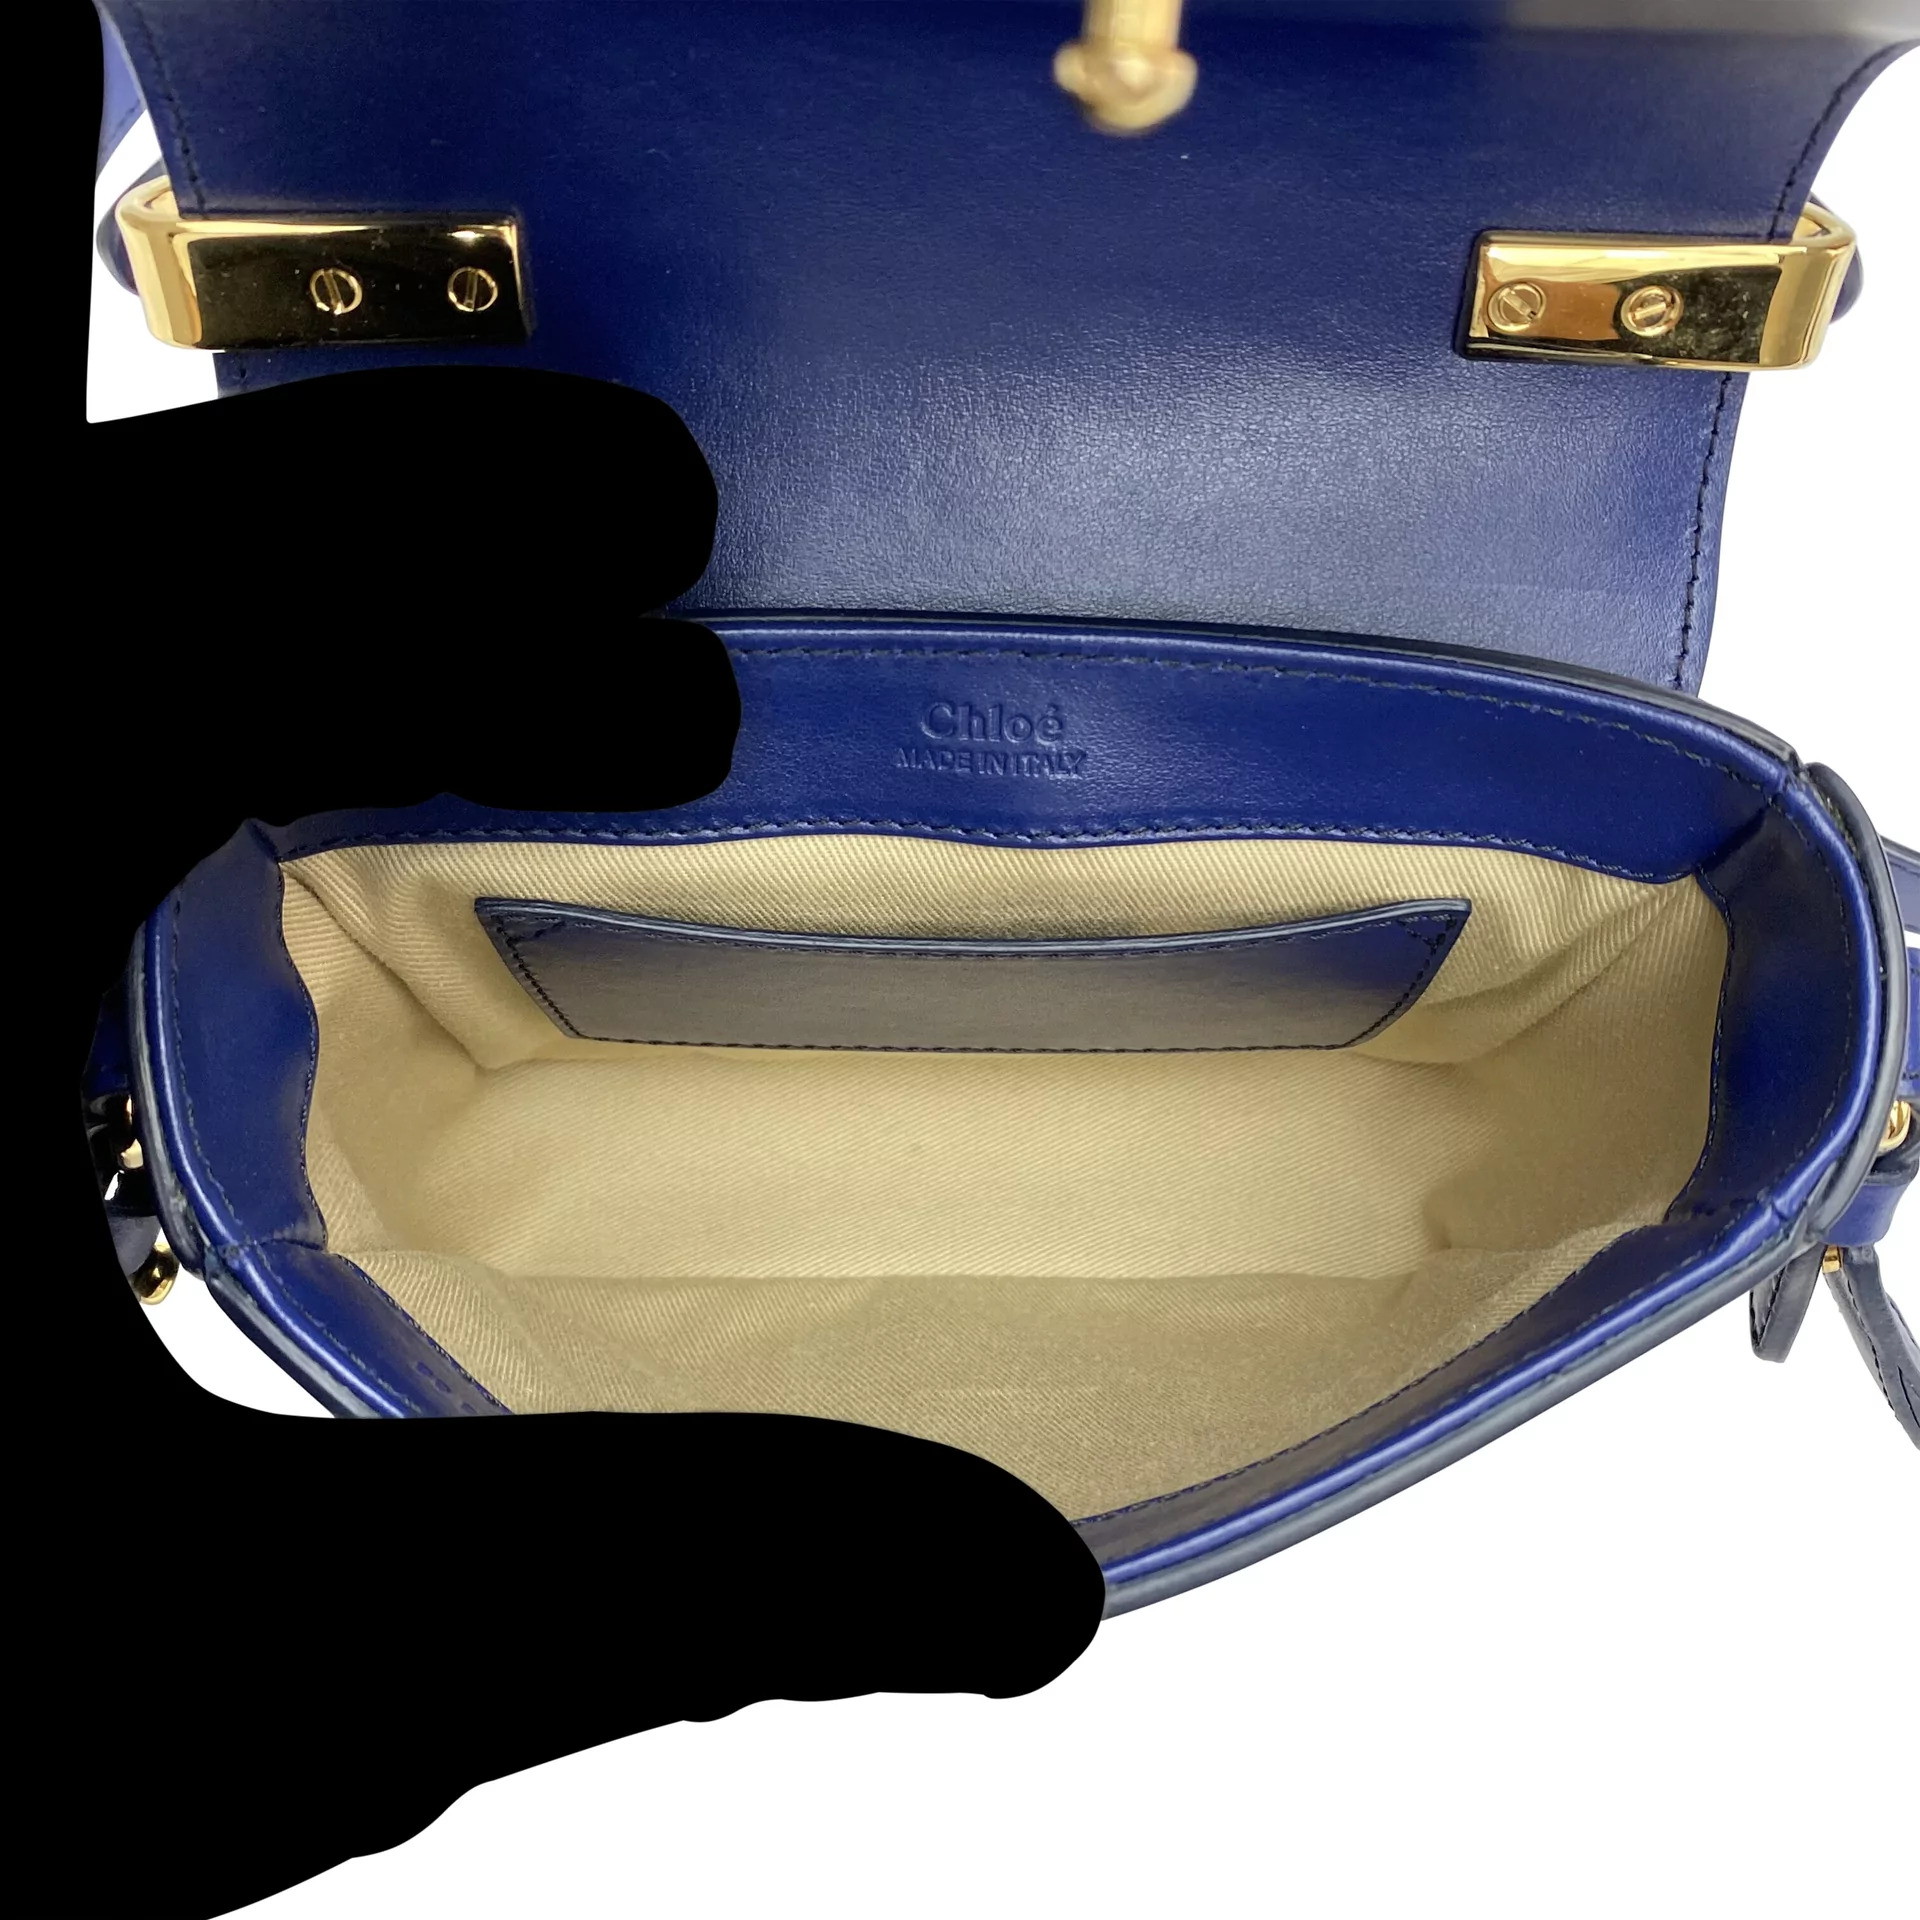 Bolsa Chloe C MIni Azul